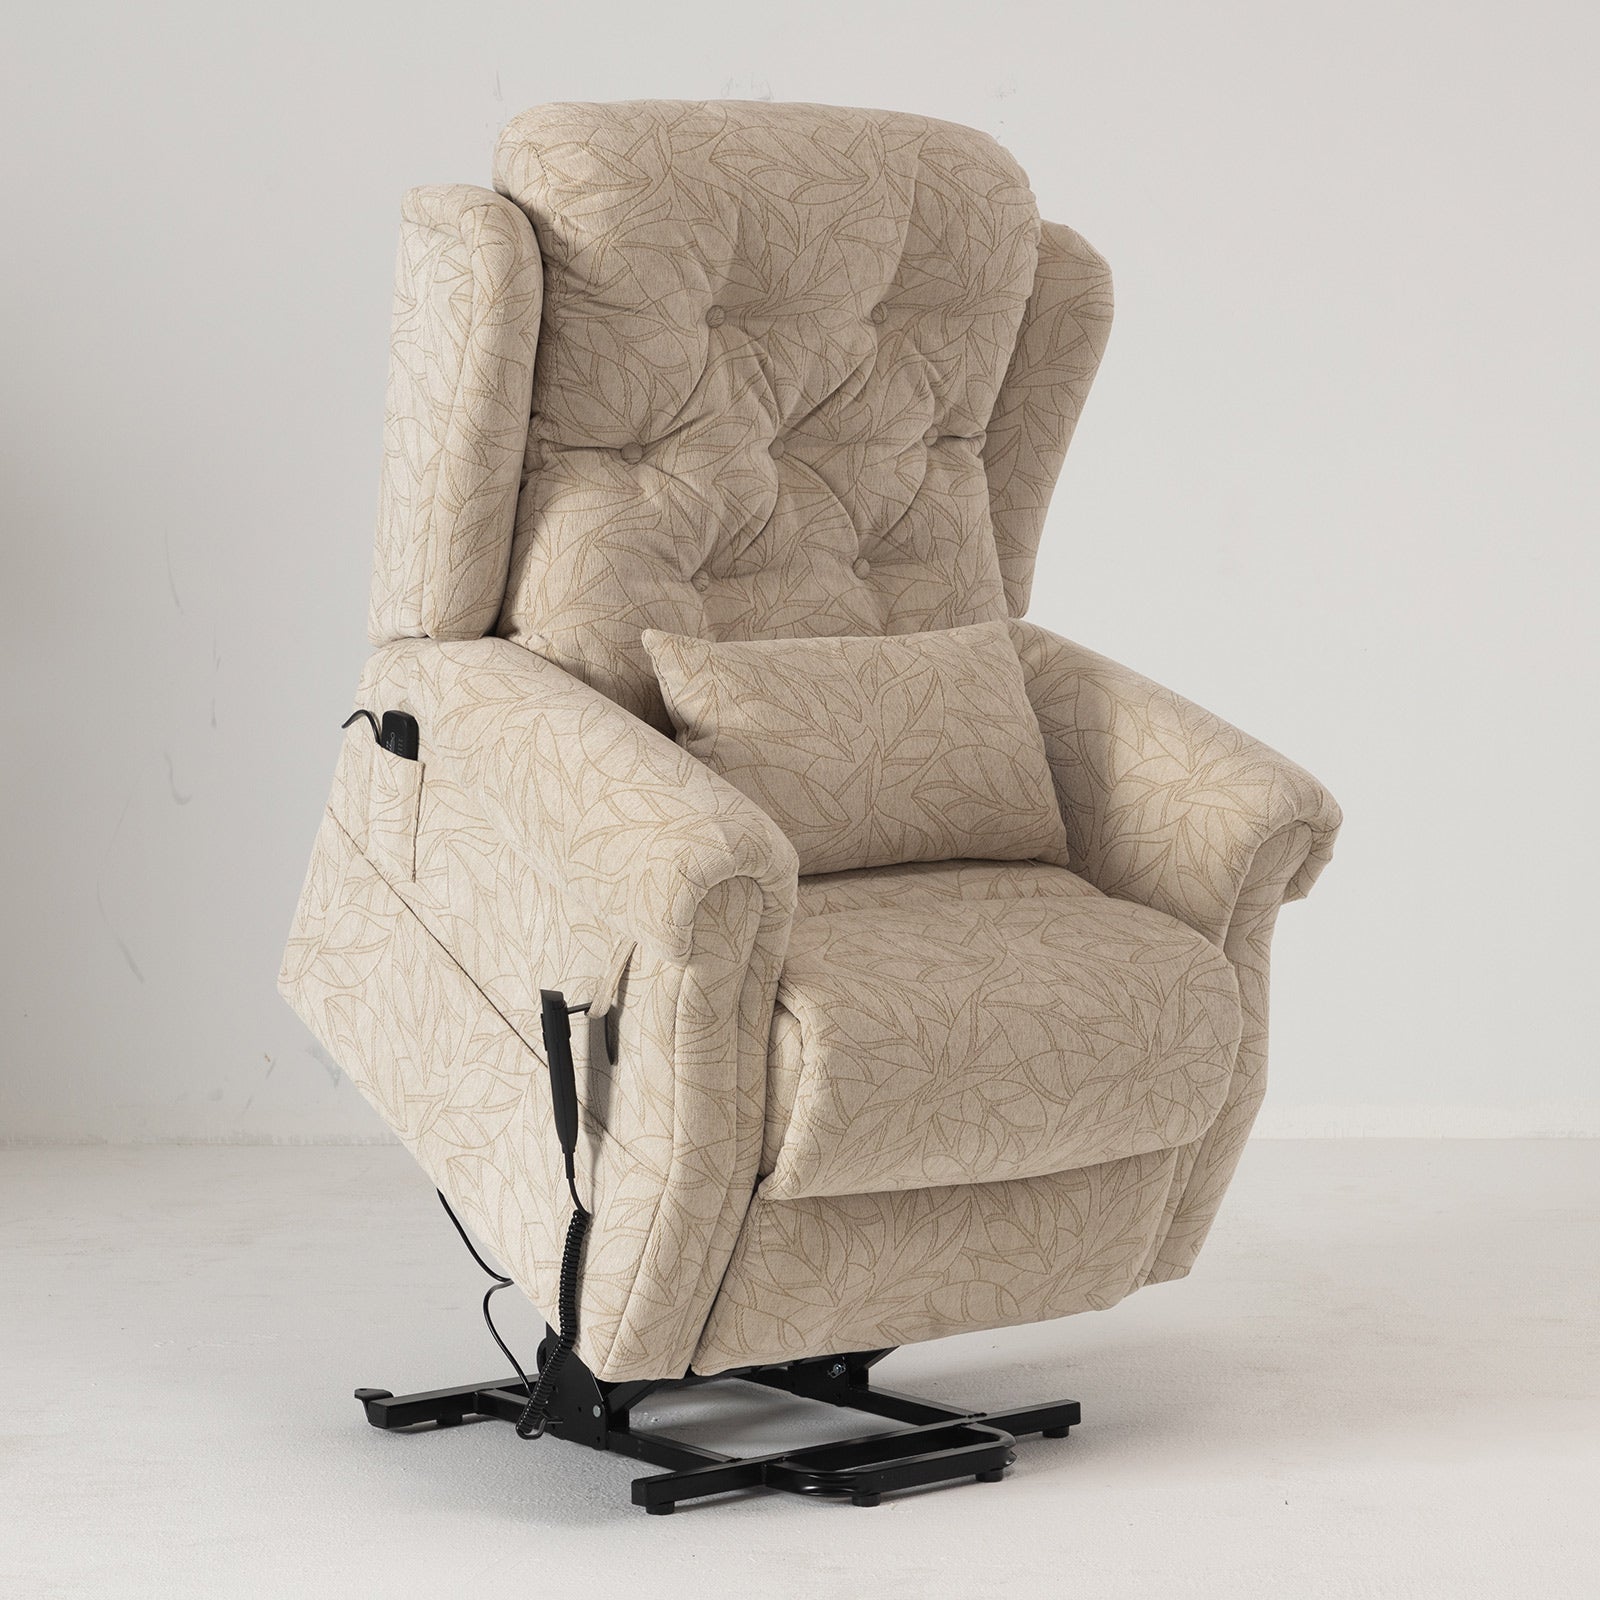 Comfy Life – Air Chair